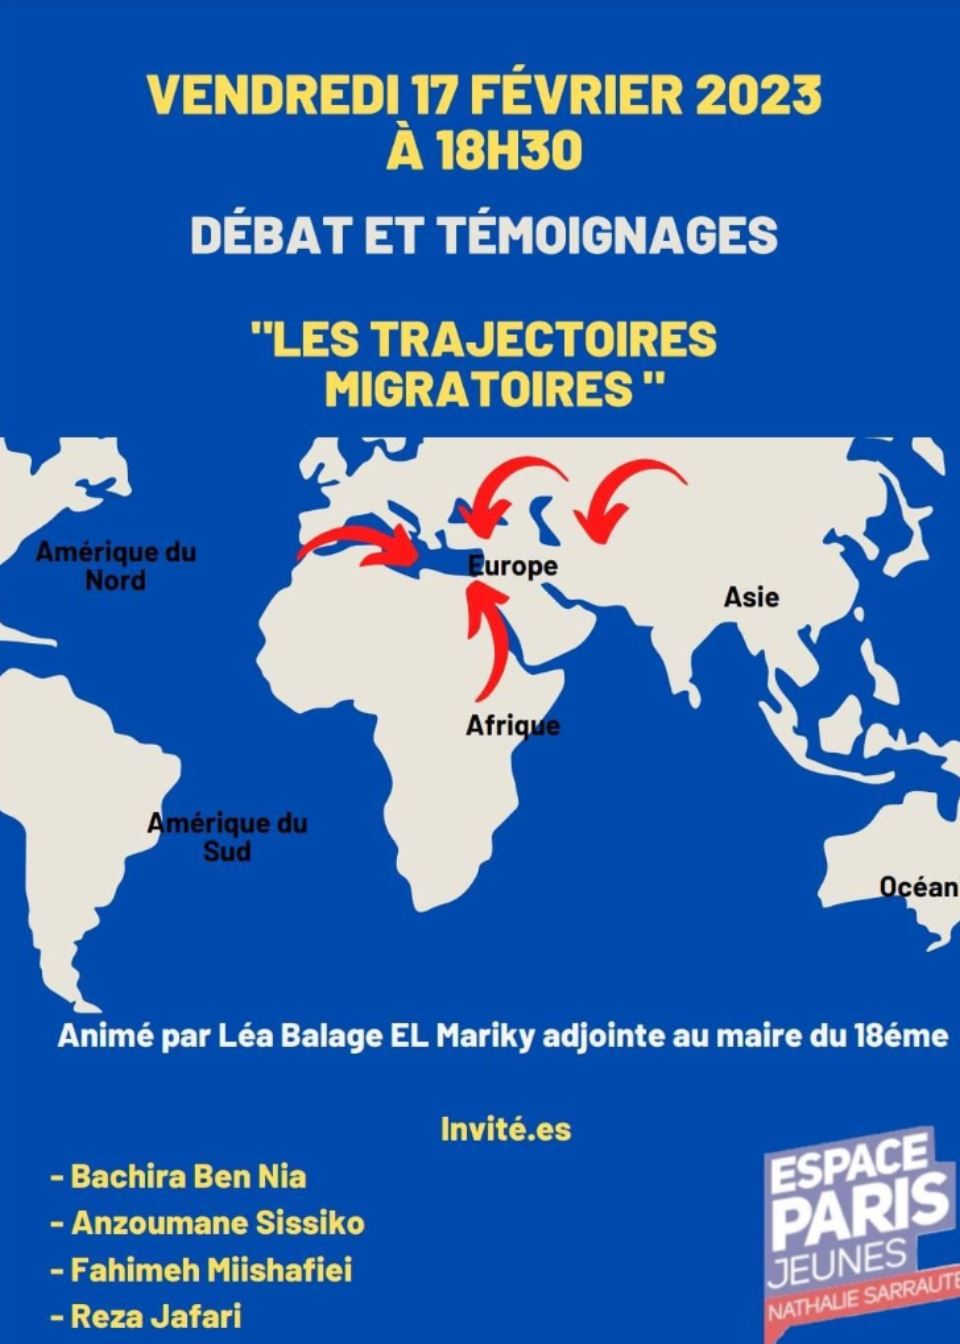 une affiche bleu avec une carte du monde 
Ecris dessus: Débat et Témoignages
"Les Trajectoires Migratoires" 